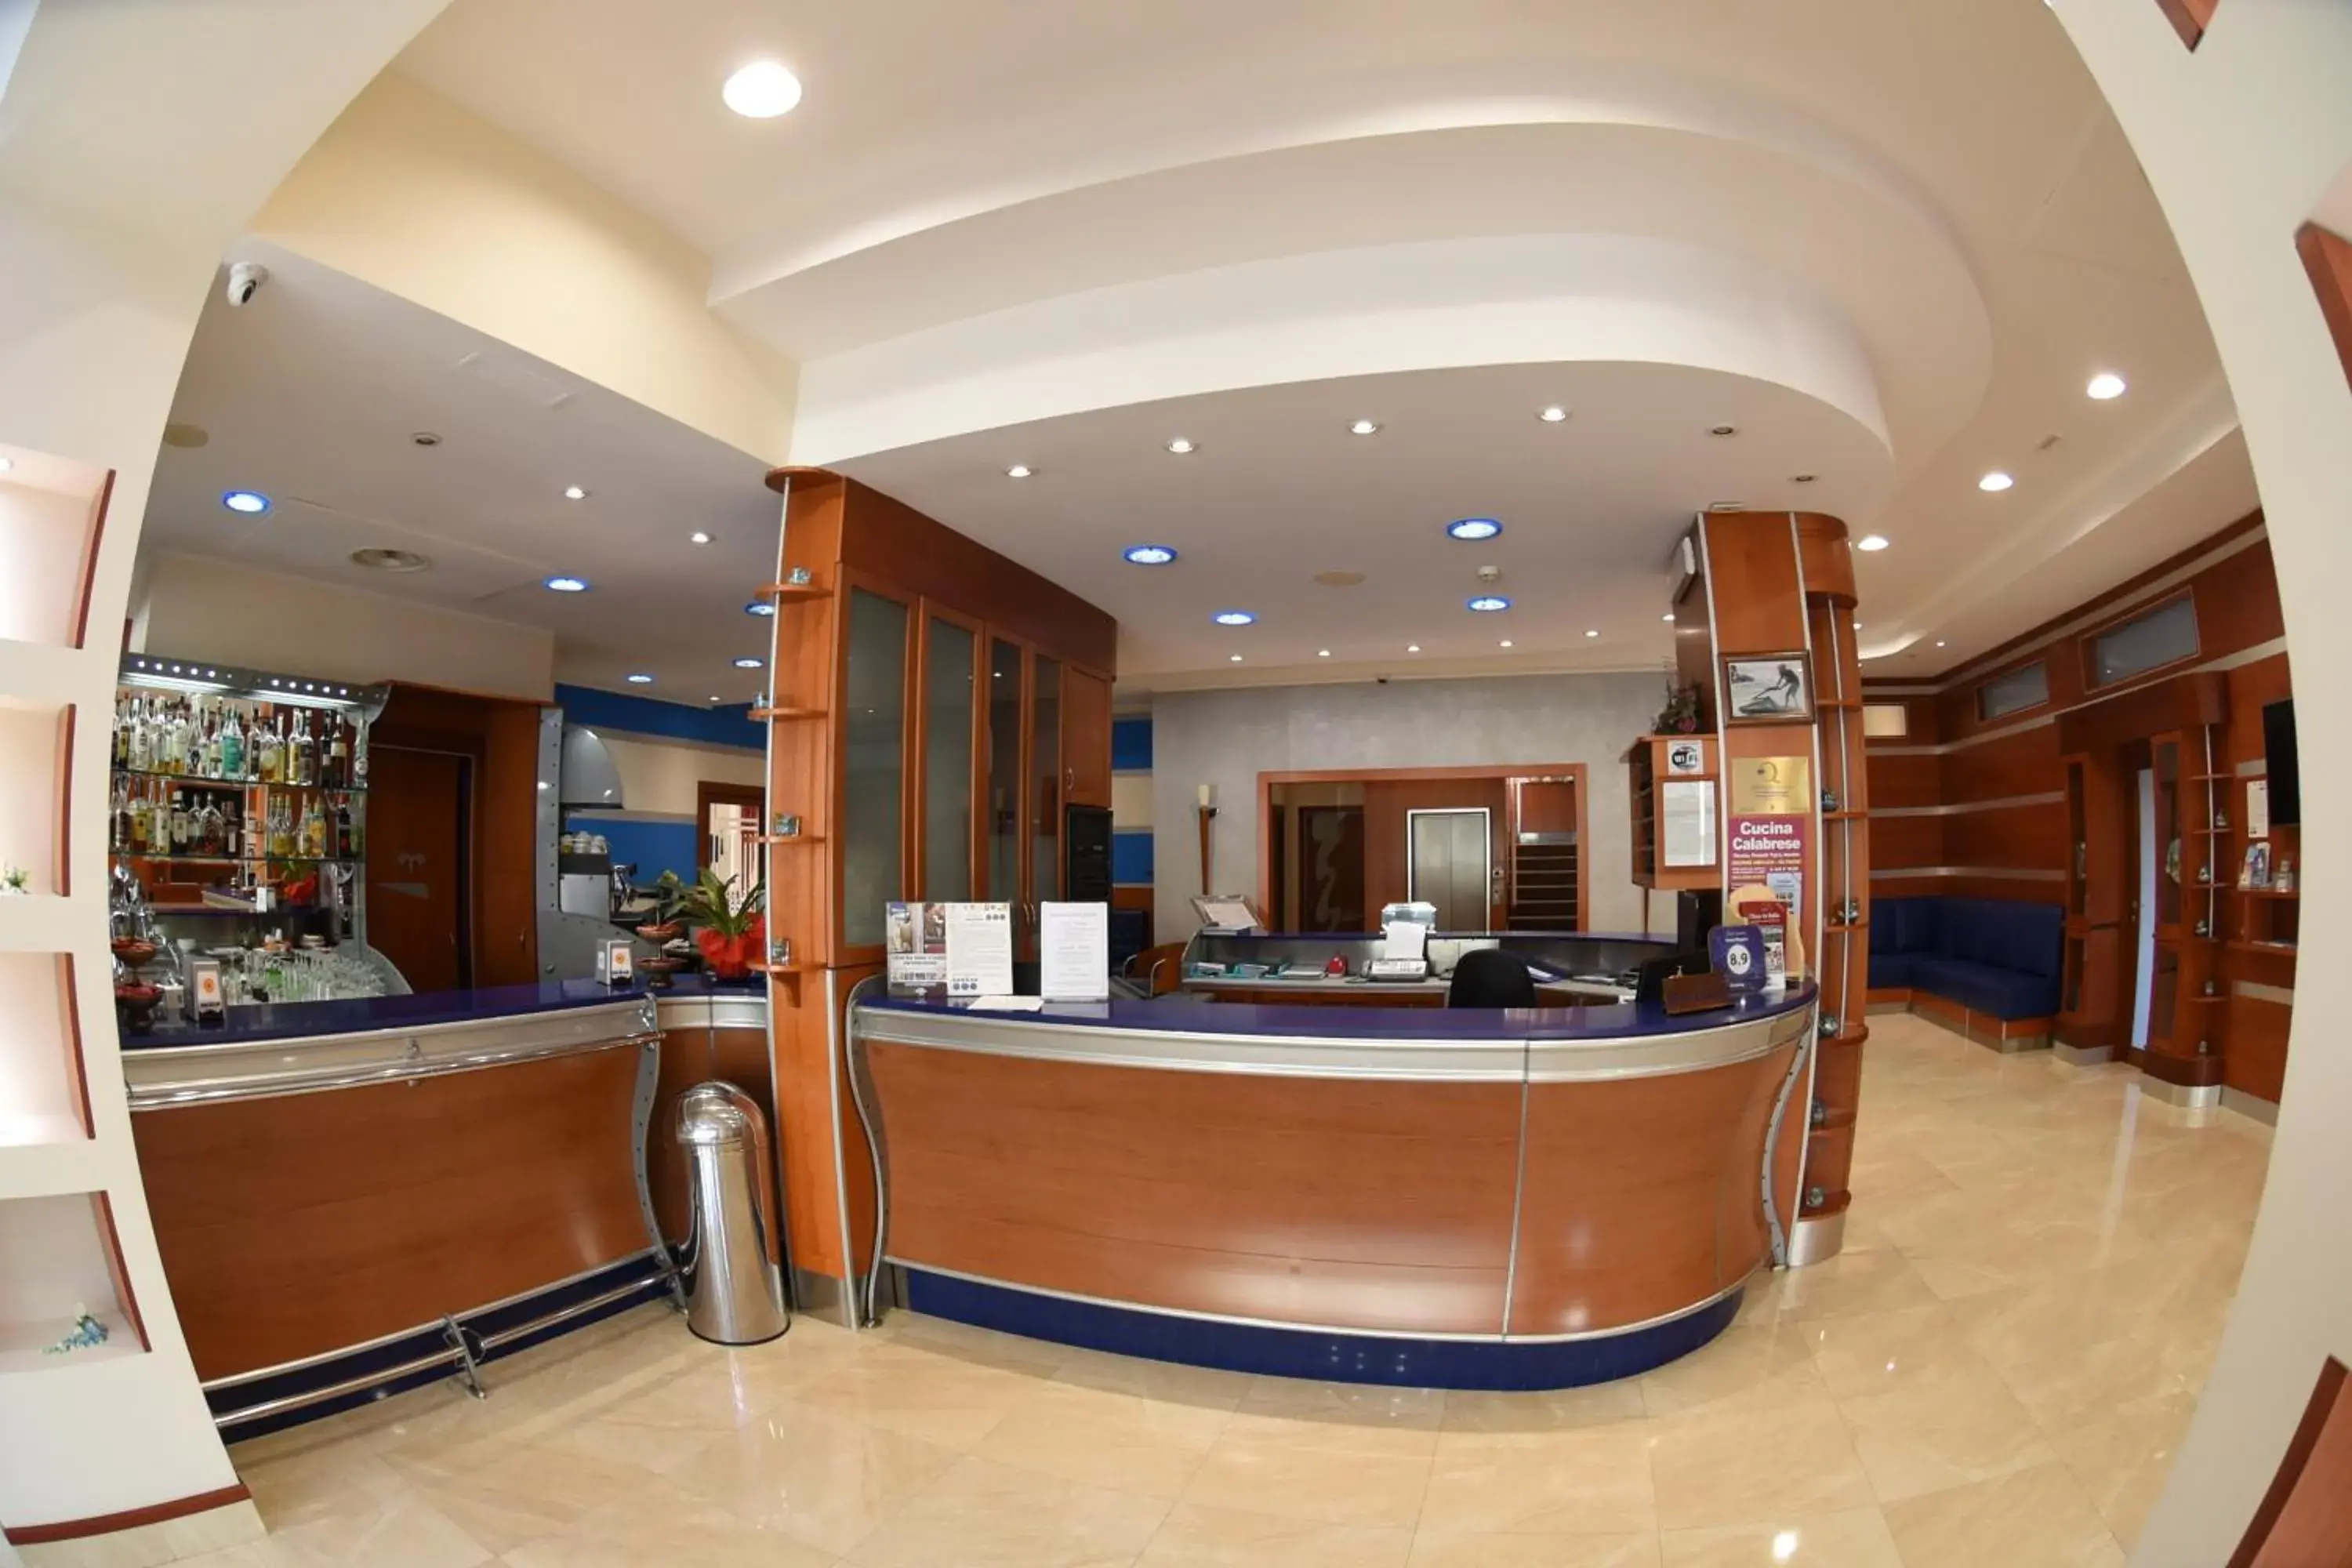 Lobby or reception, Lobby/Reception in Hotel Niagara